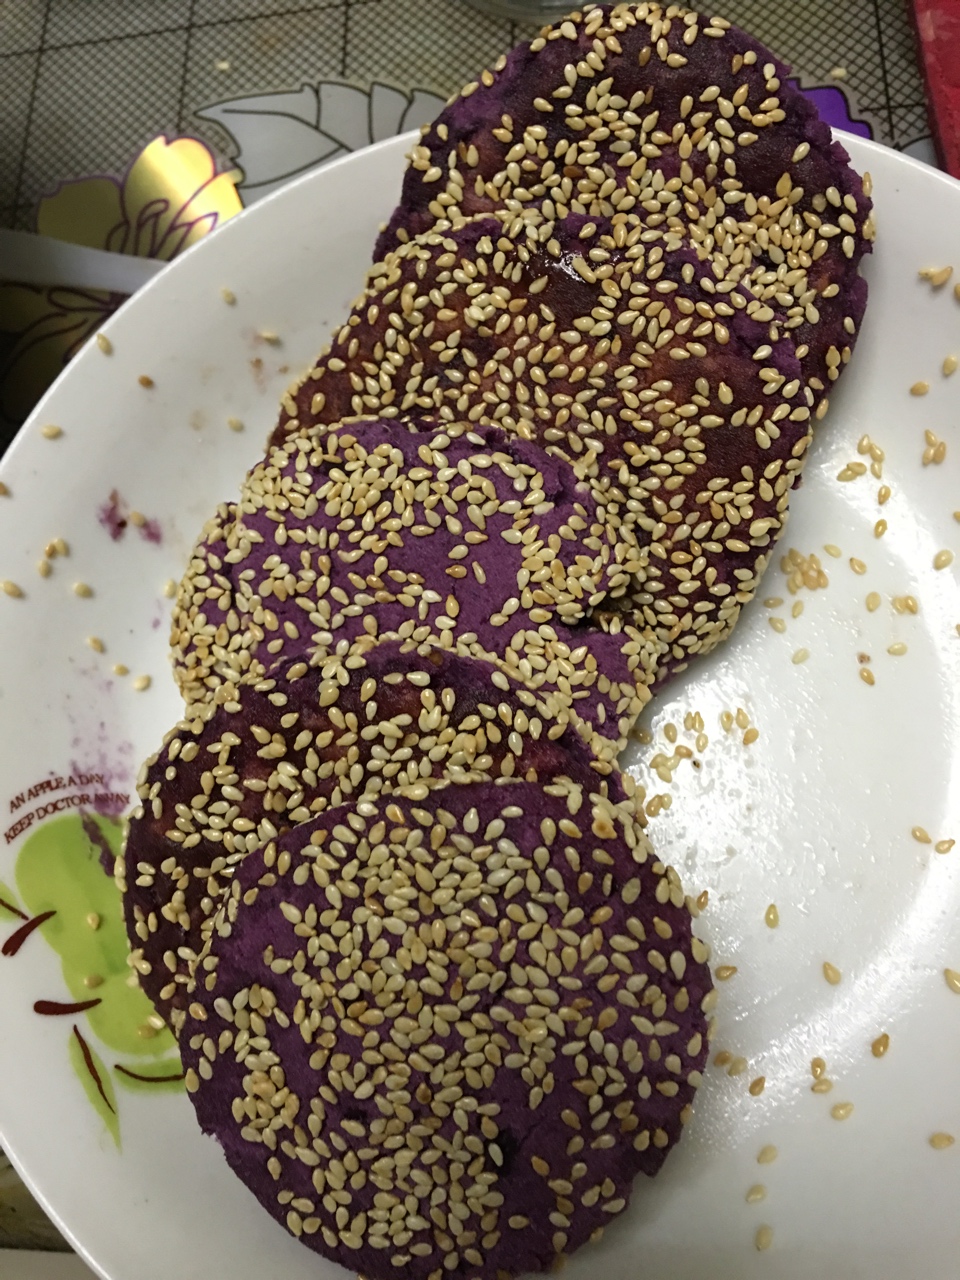 紫薯芝麻饼